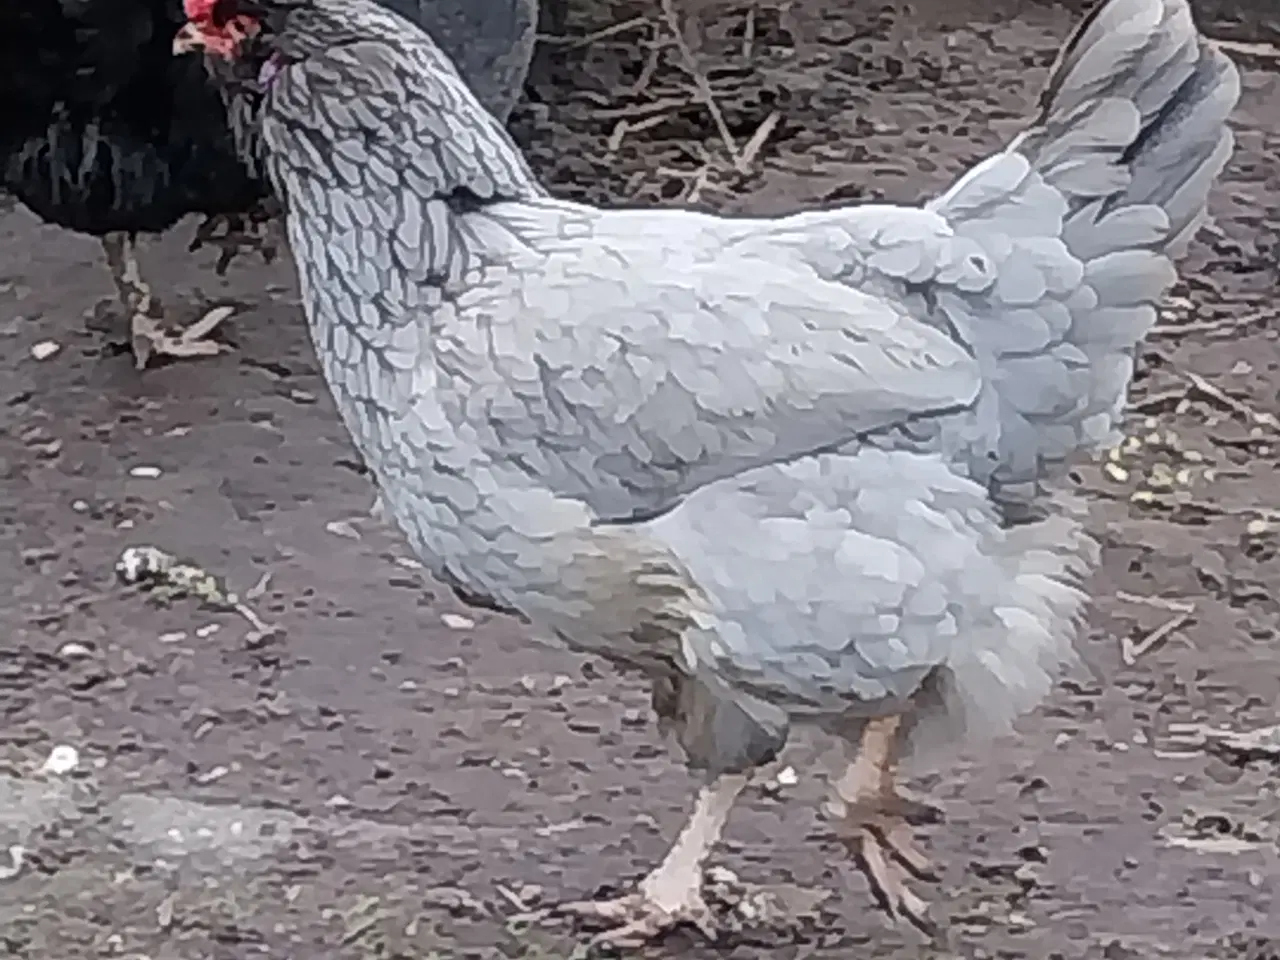 Billede 4 - Daggamle kyllinger